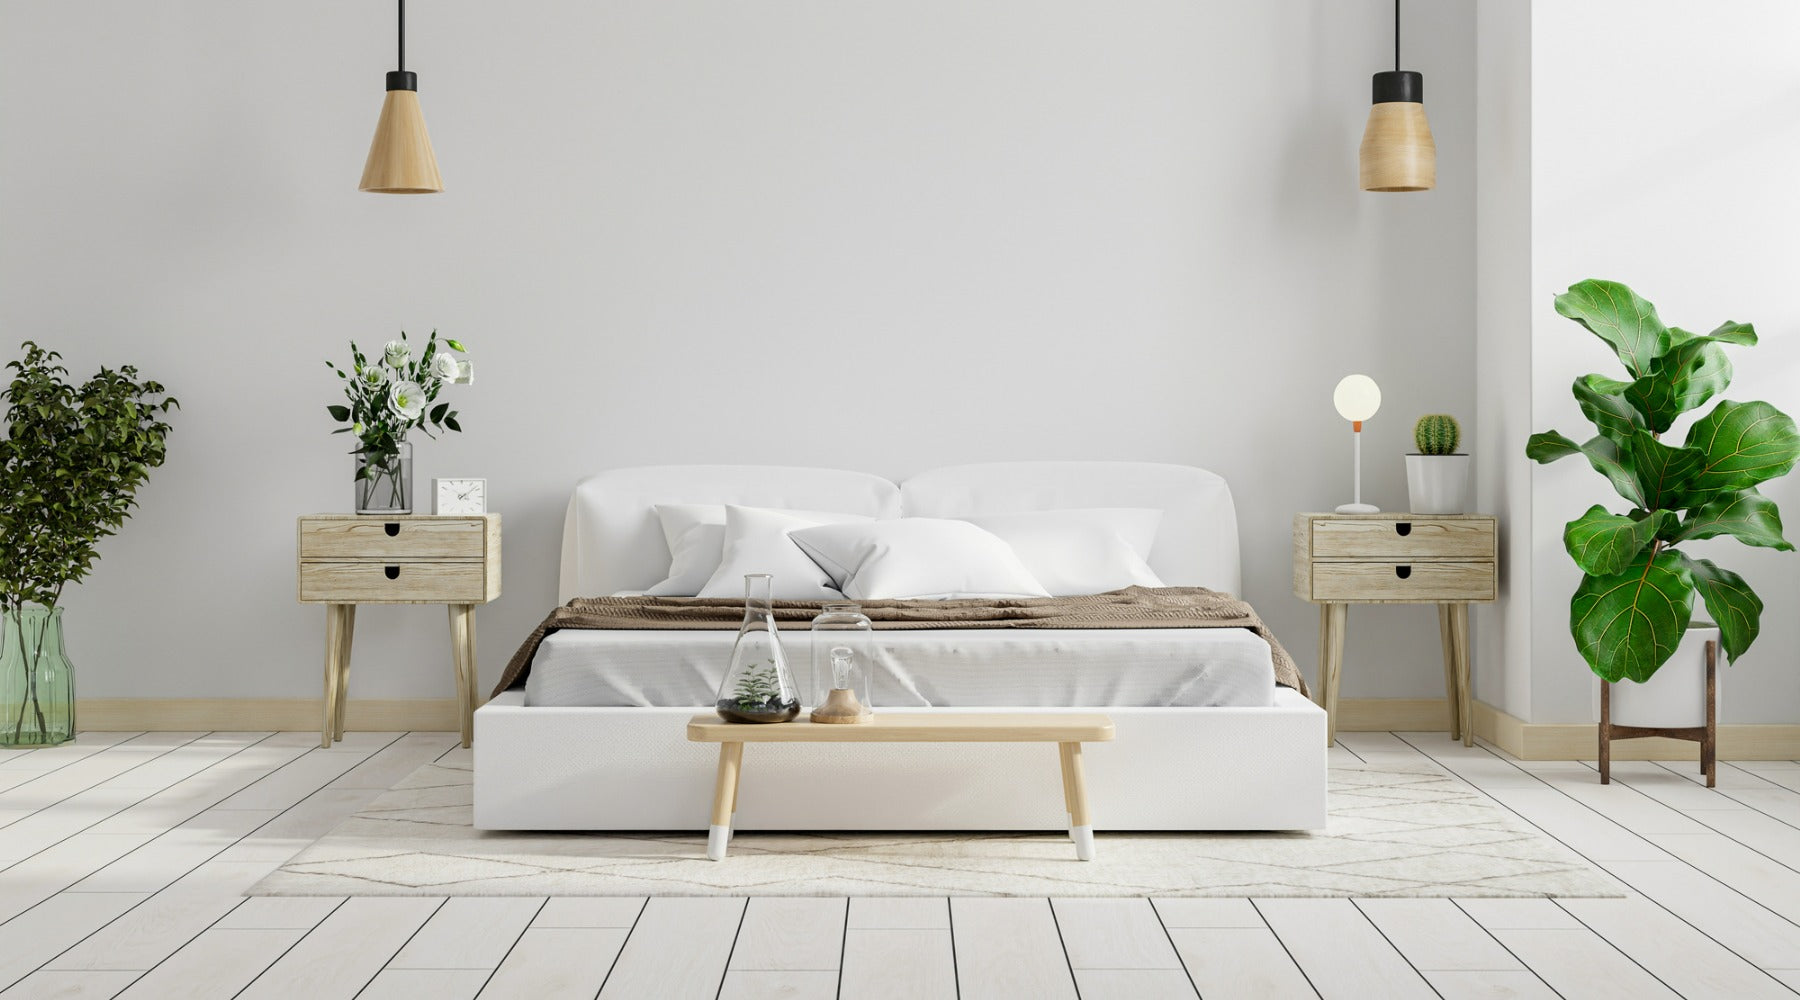 How Do I Make My Bedroom Look Scandinavian?